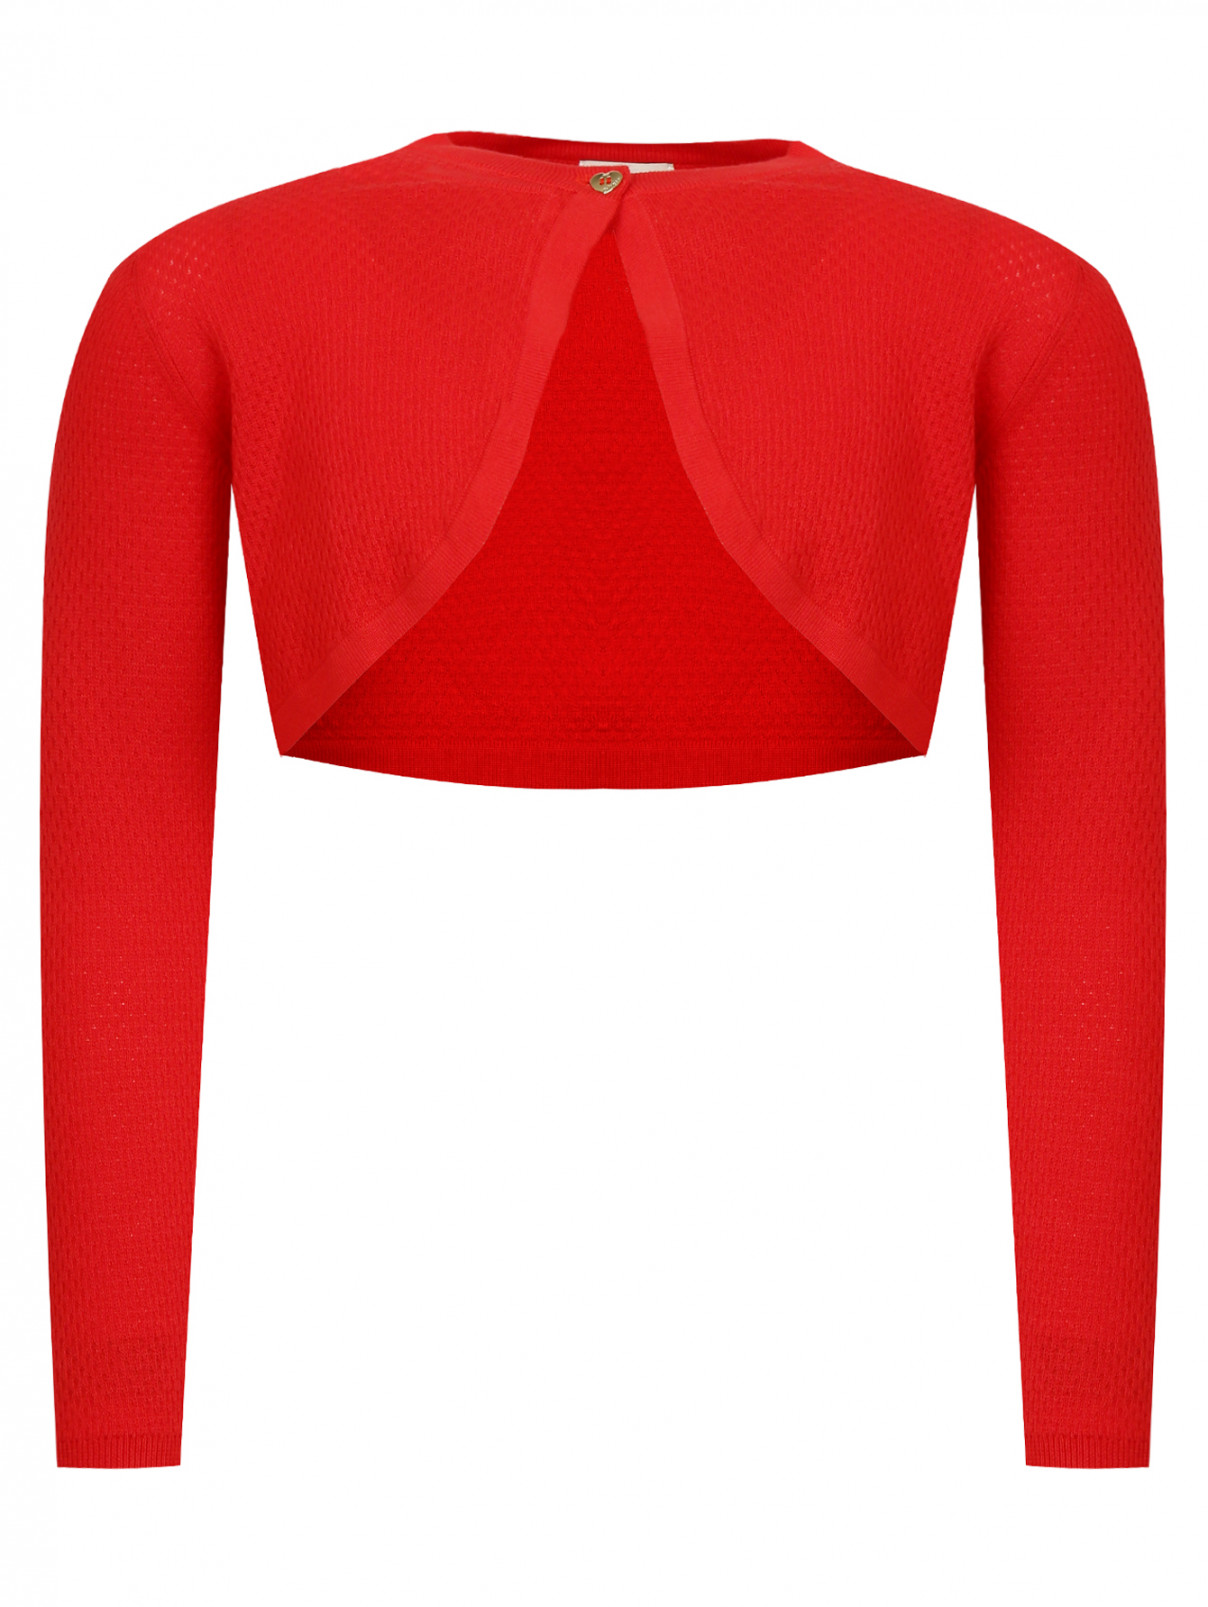 Трикотажное болеро с длинными рукавами Armani Junior  –  Общий вид  – Цвет:  Красный